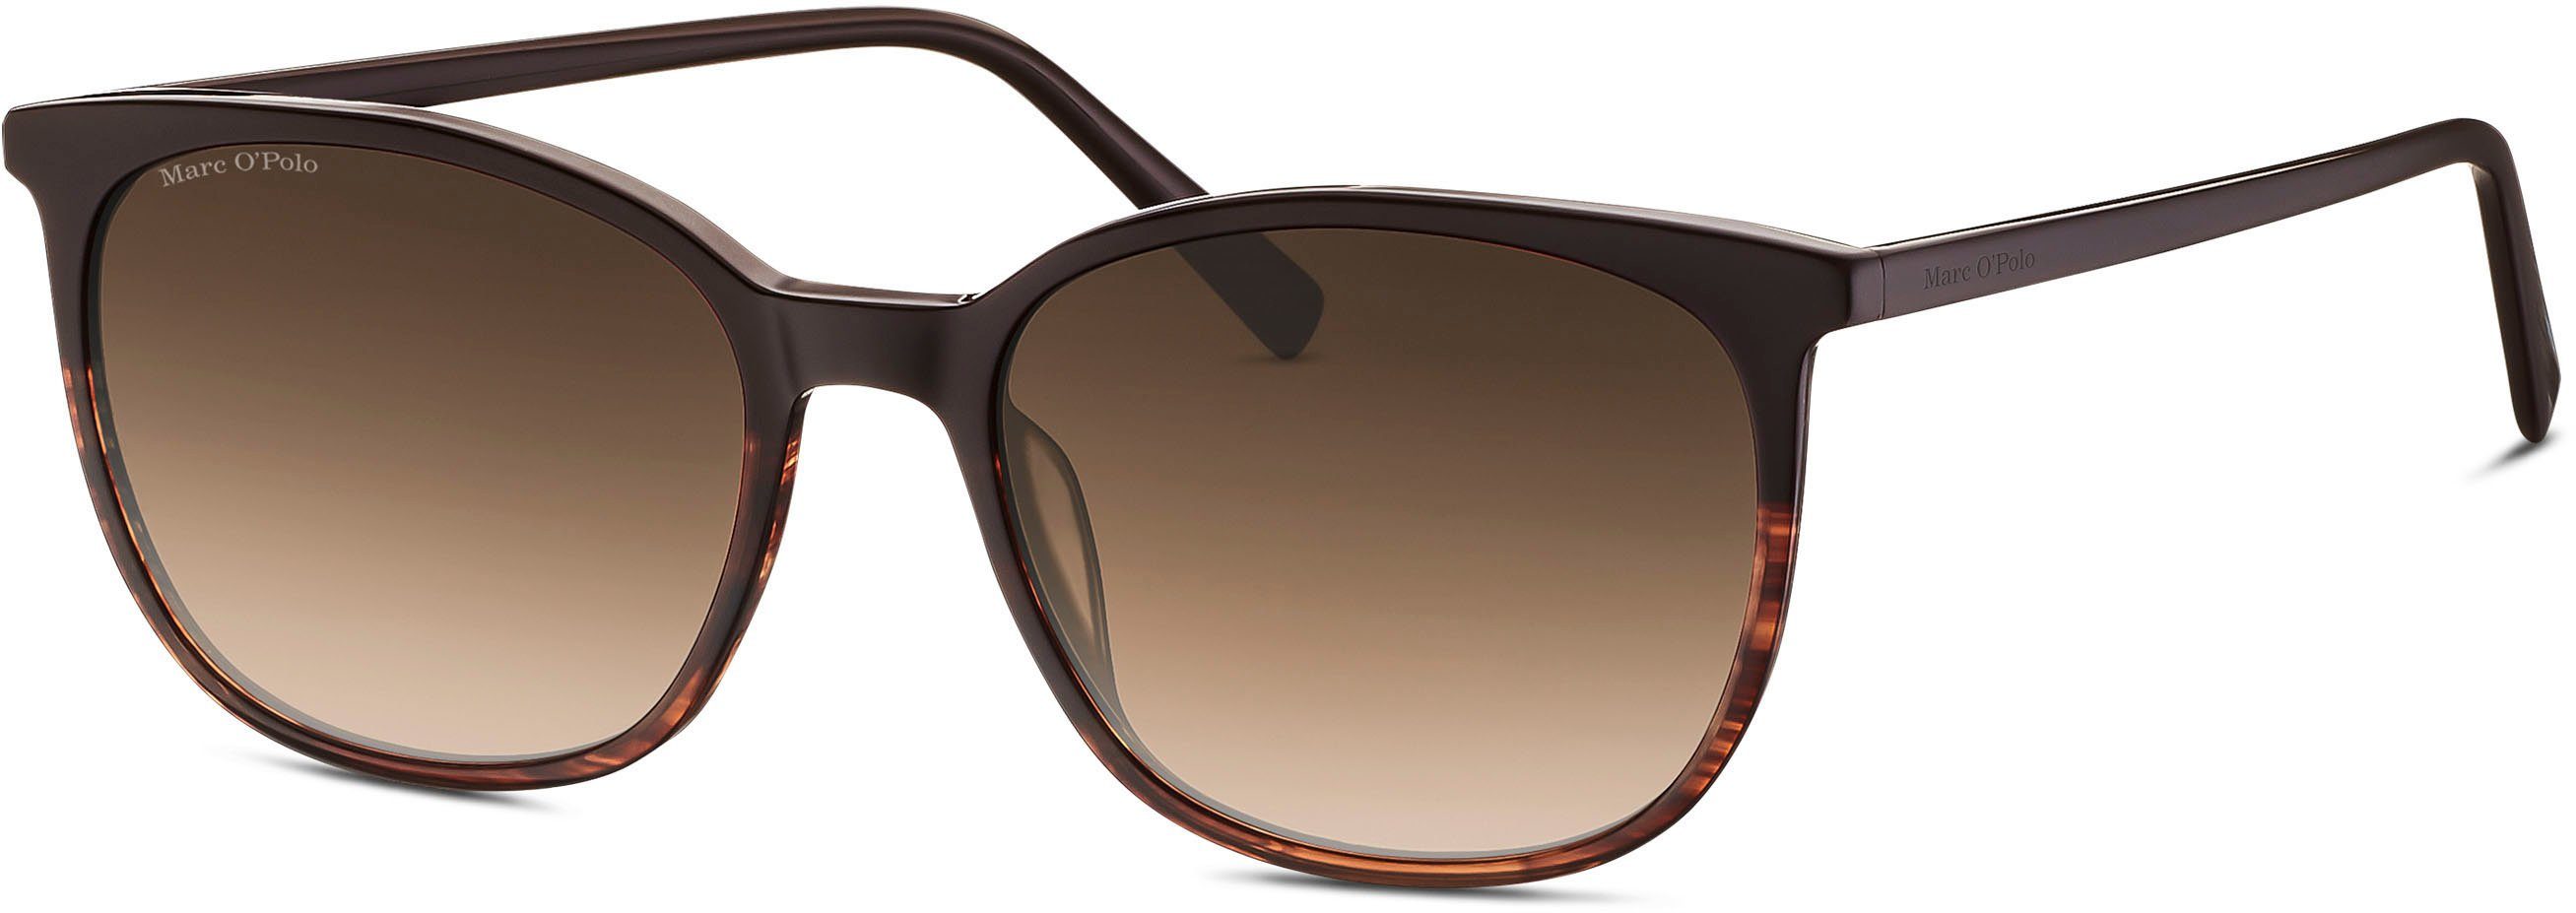 Marc O'Polo Sonnenbrille Modell 506188 braun